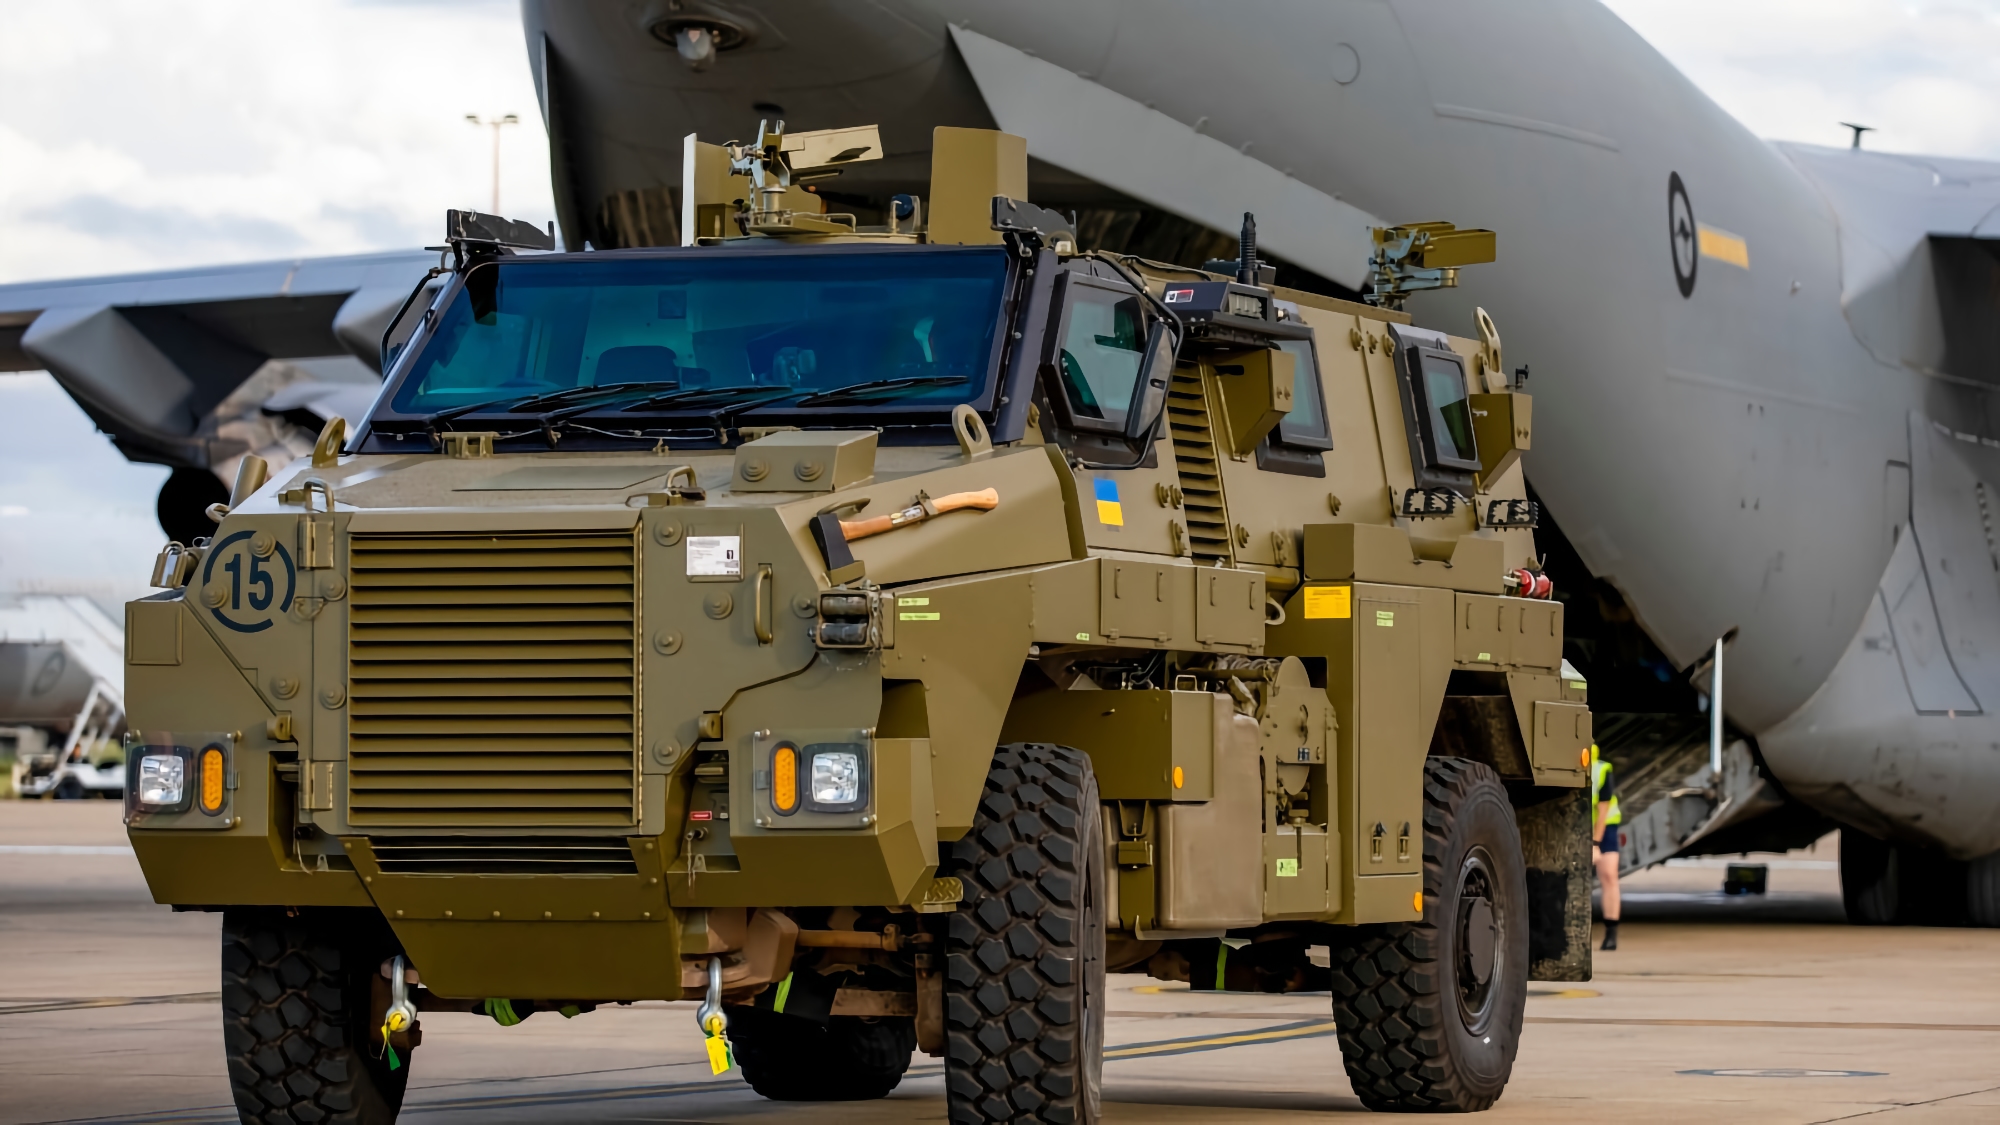 Gepanzerte Bushmaster-Fahrzeuge, M113-Schützenpanzer und medizinische Ausrüstung: Australien wird der Ukraine eine neue Ladung militärischer Hilfe übergeben